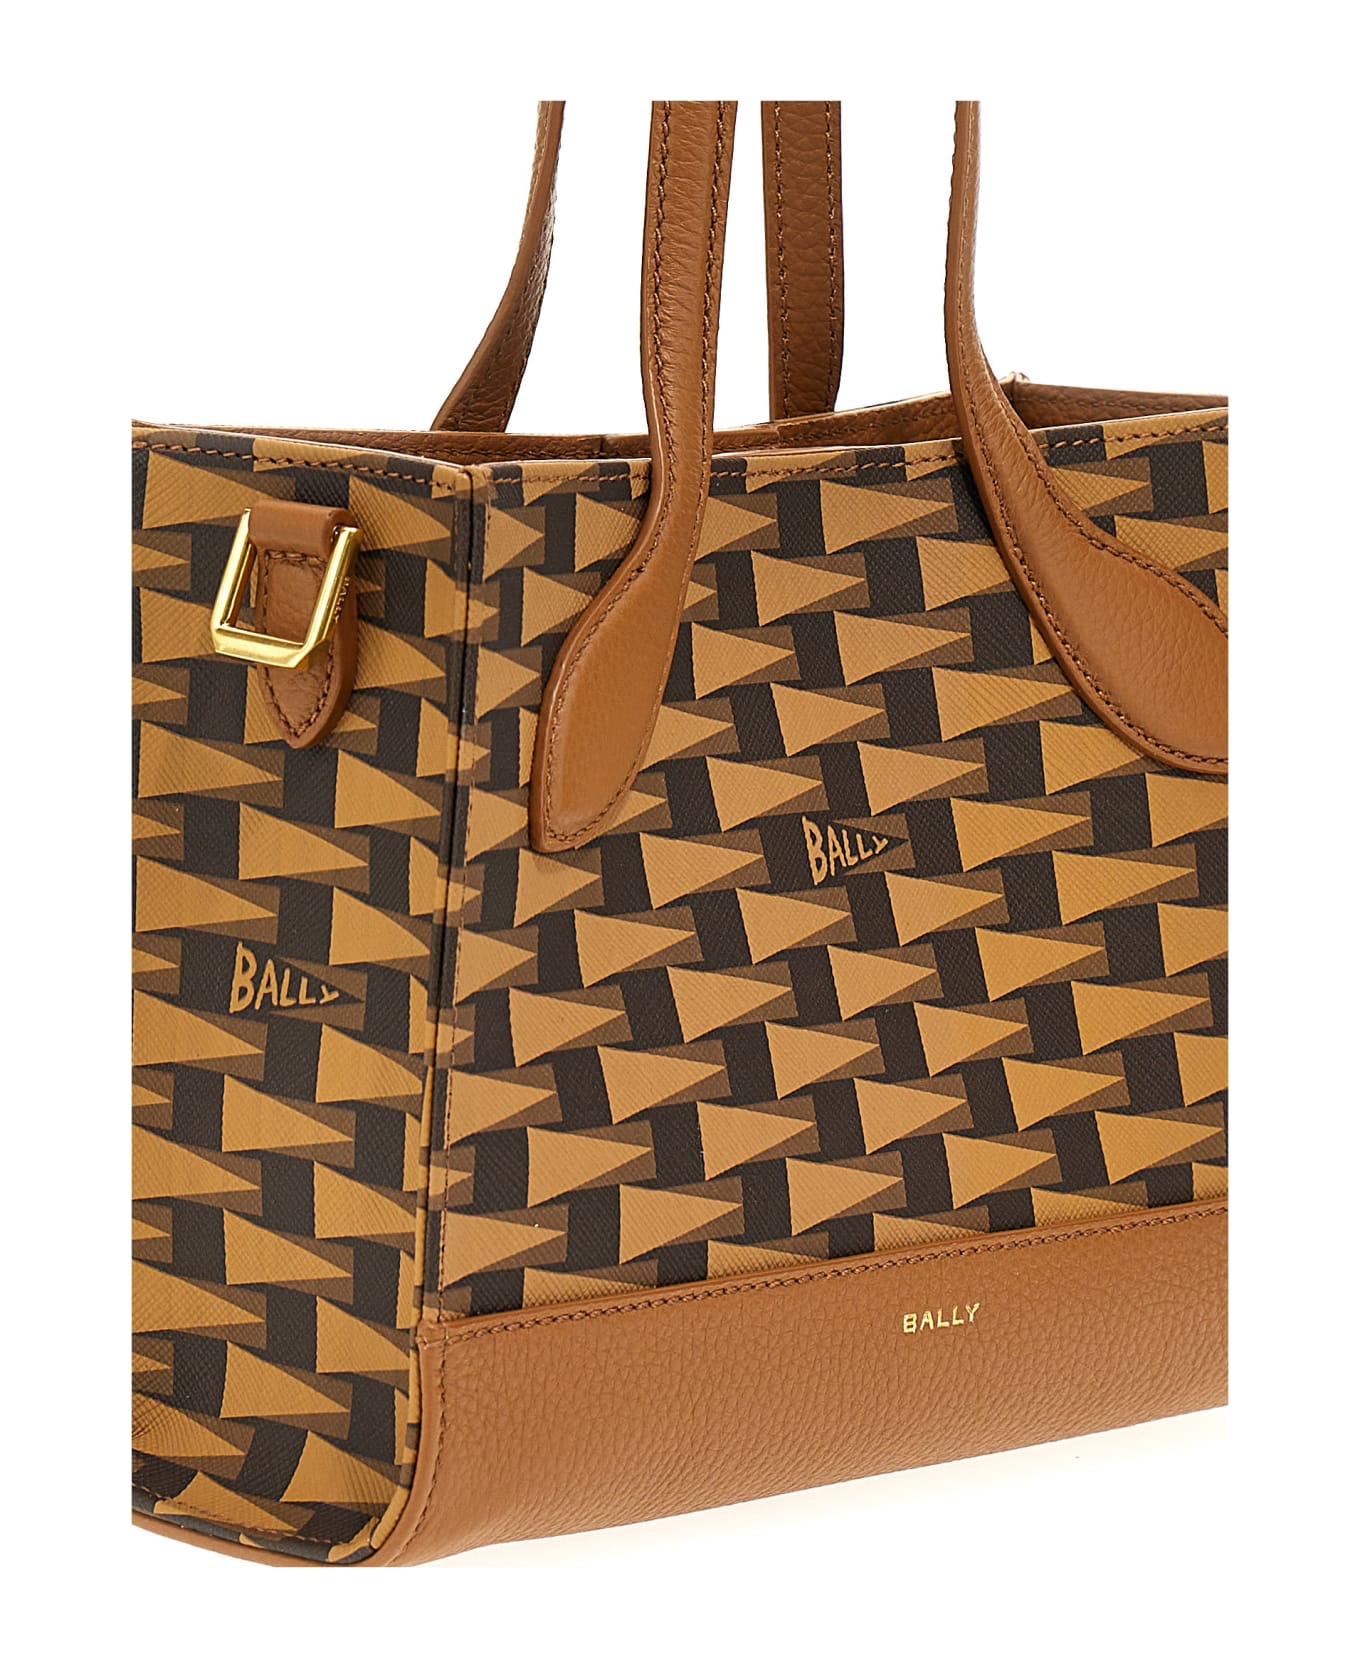 Bally 'keep On Xs' Shopping Bag - Multideserto+oro トートバッグ